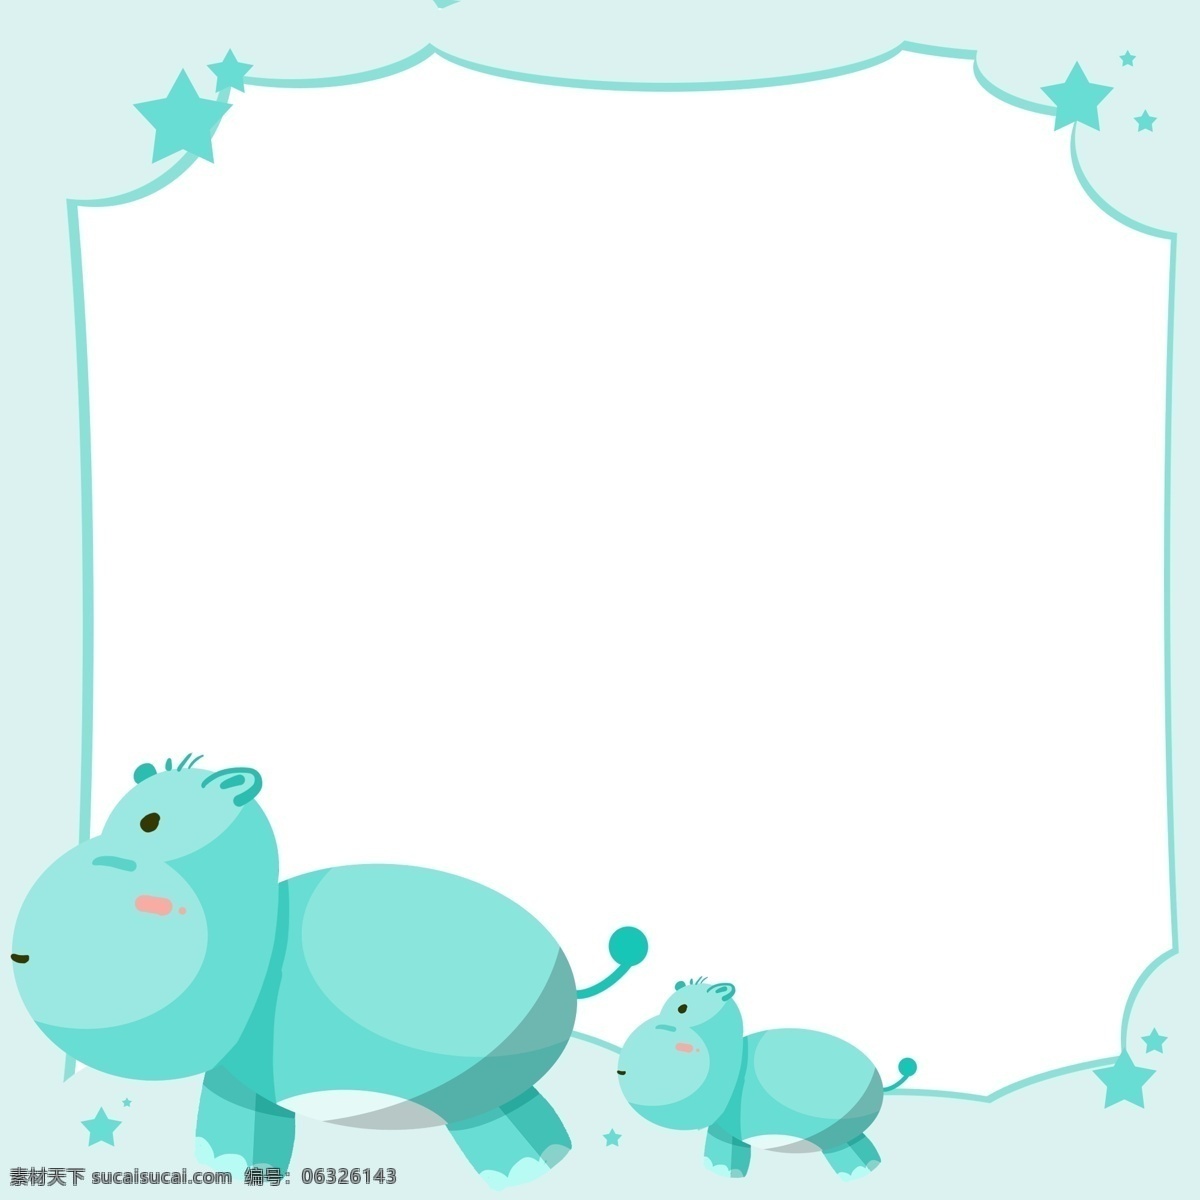 手绘 犀牛 动物 边框 蓝色的犀牛 蓝色的边框 卡通边框 手绘动物边框 可爱的动物 蓝色的星星